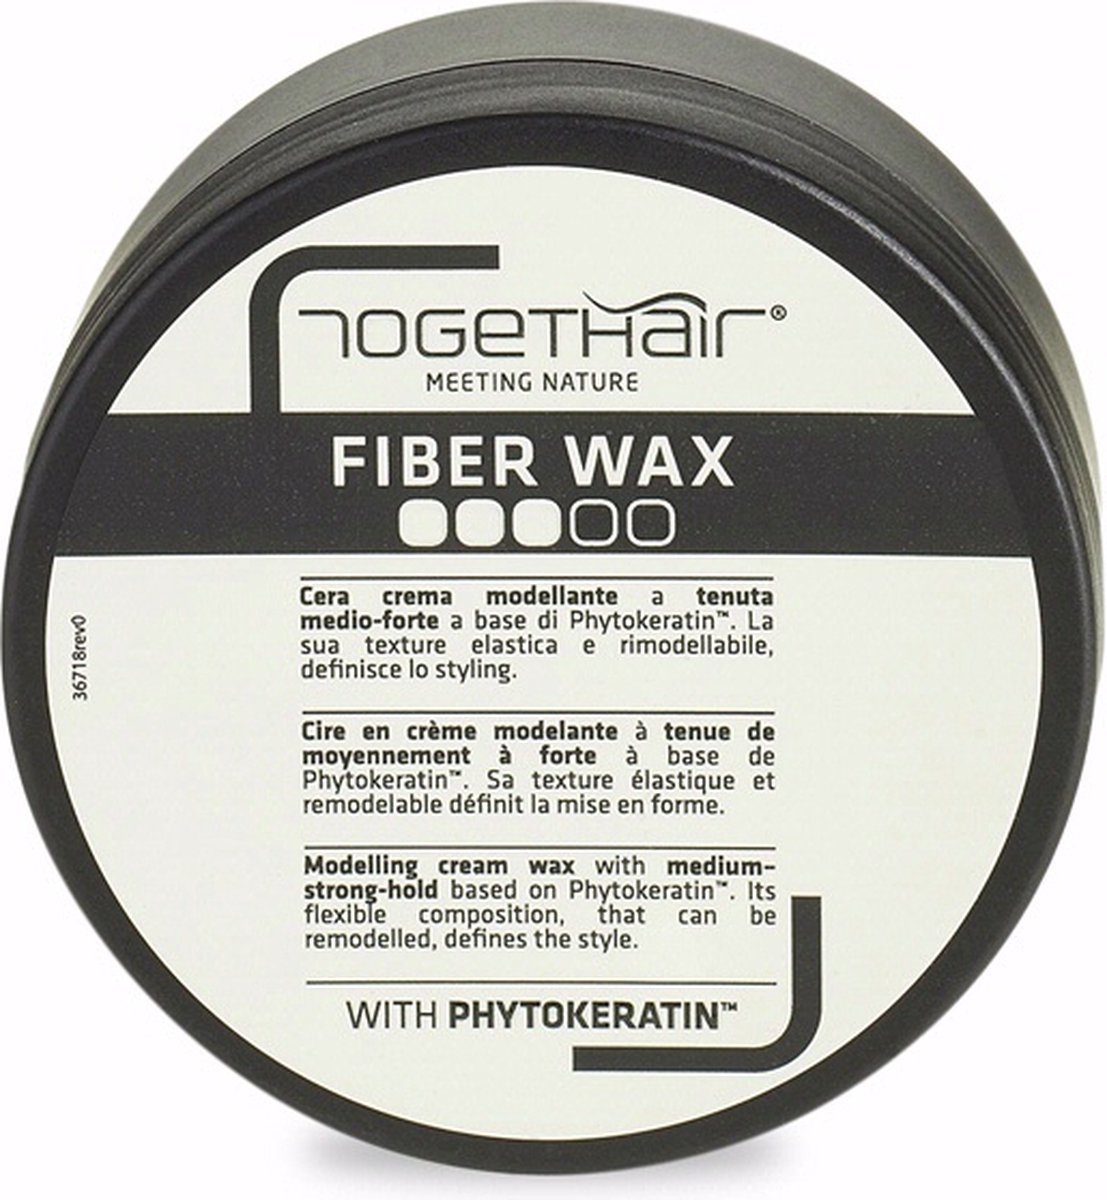 Togethair Fiber wax